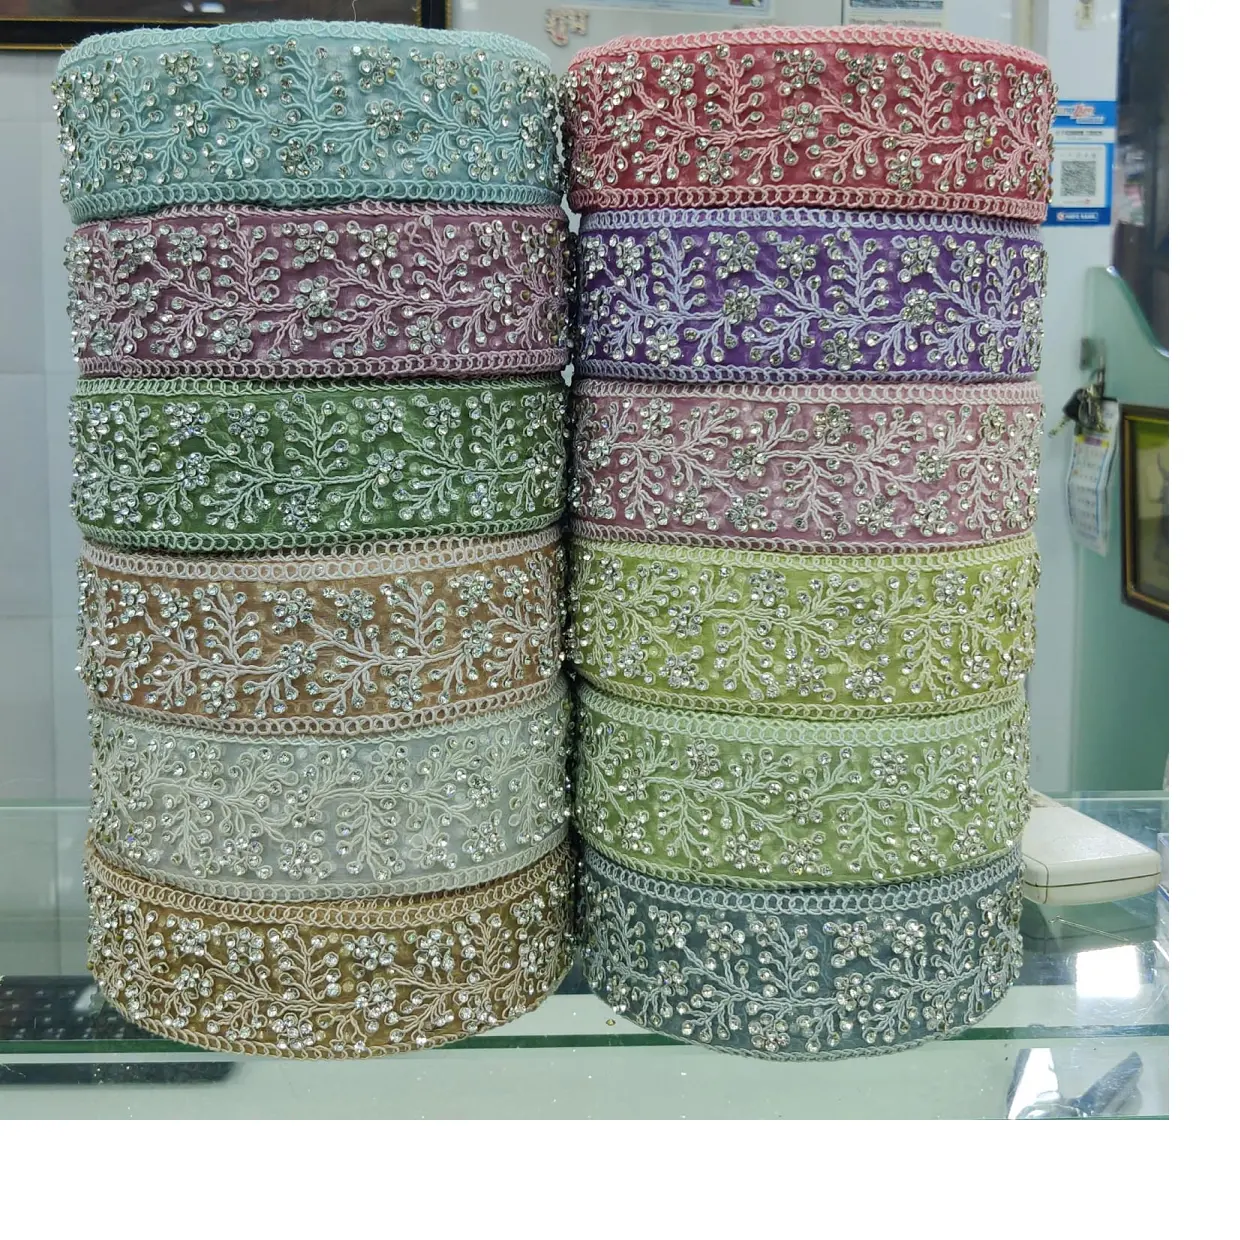 Maßge schneiderte maschinen gestickte Bänder & Schnürsenkel in verschiedenen Designs & in zwölf Farben für Brautkleider in 2 Zoll Breite.